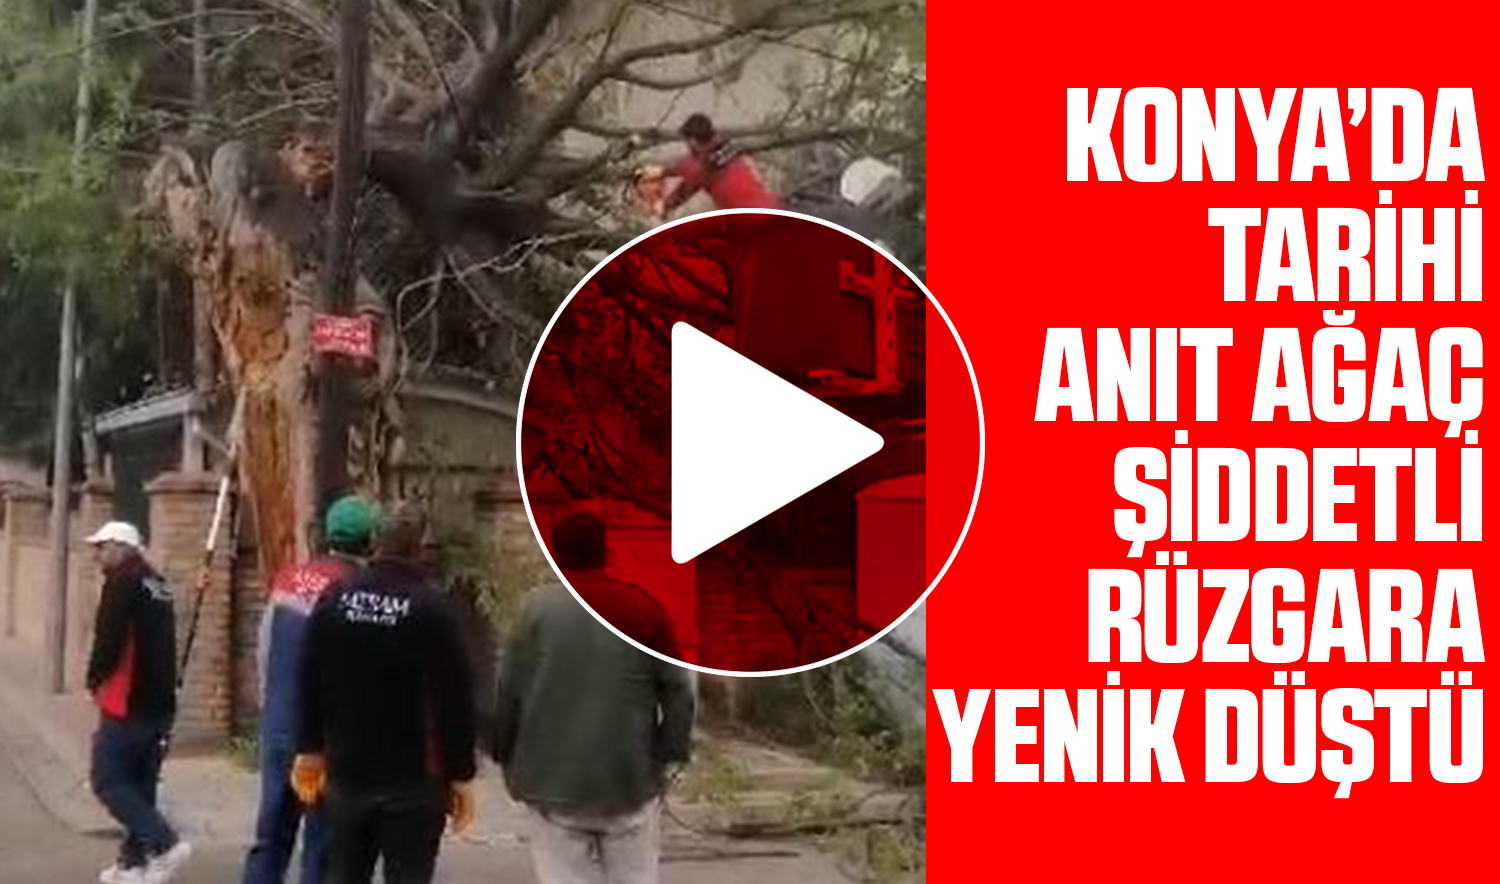 Konya’daki tarihi anıt ağaç şiddetli rüzgara yenik düştü!